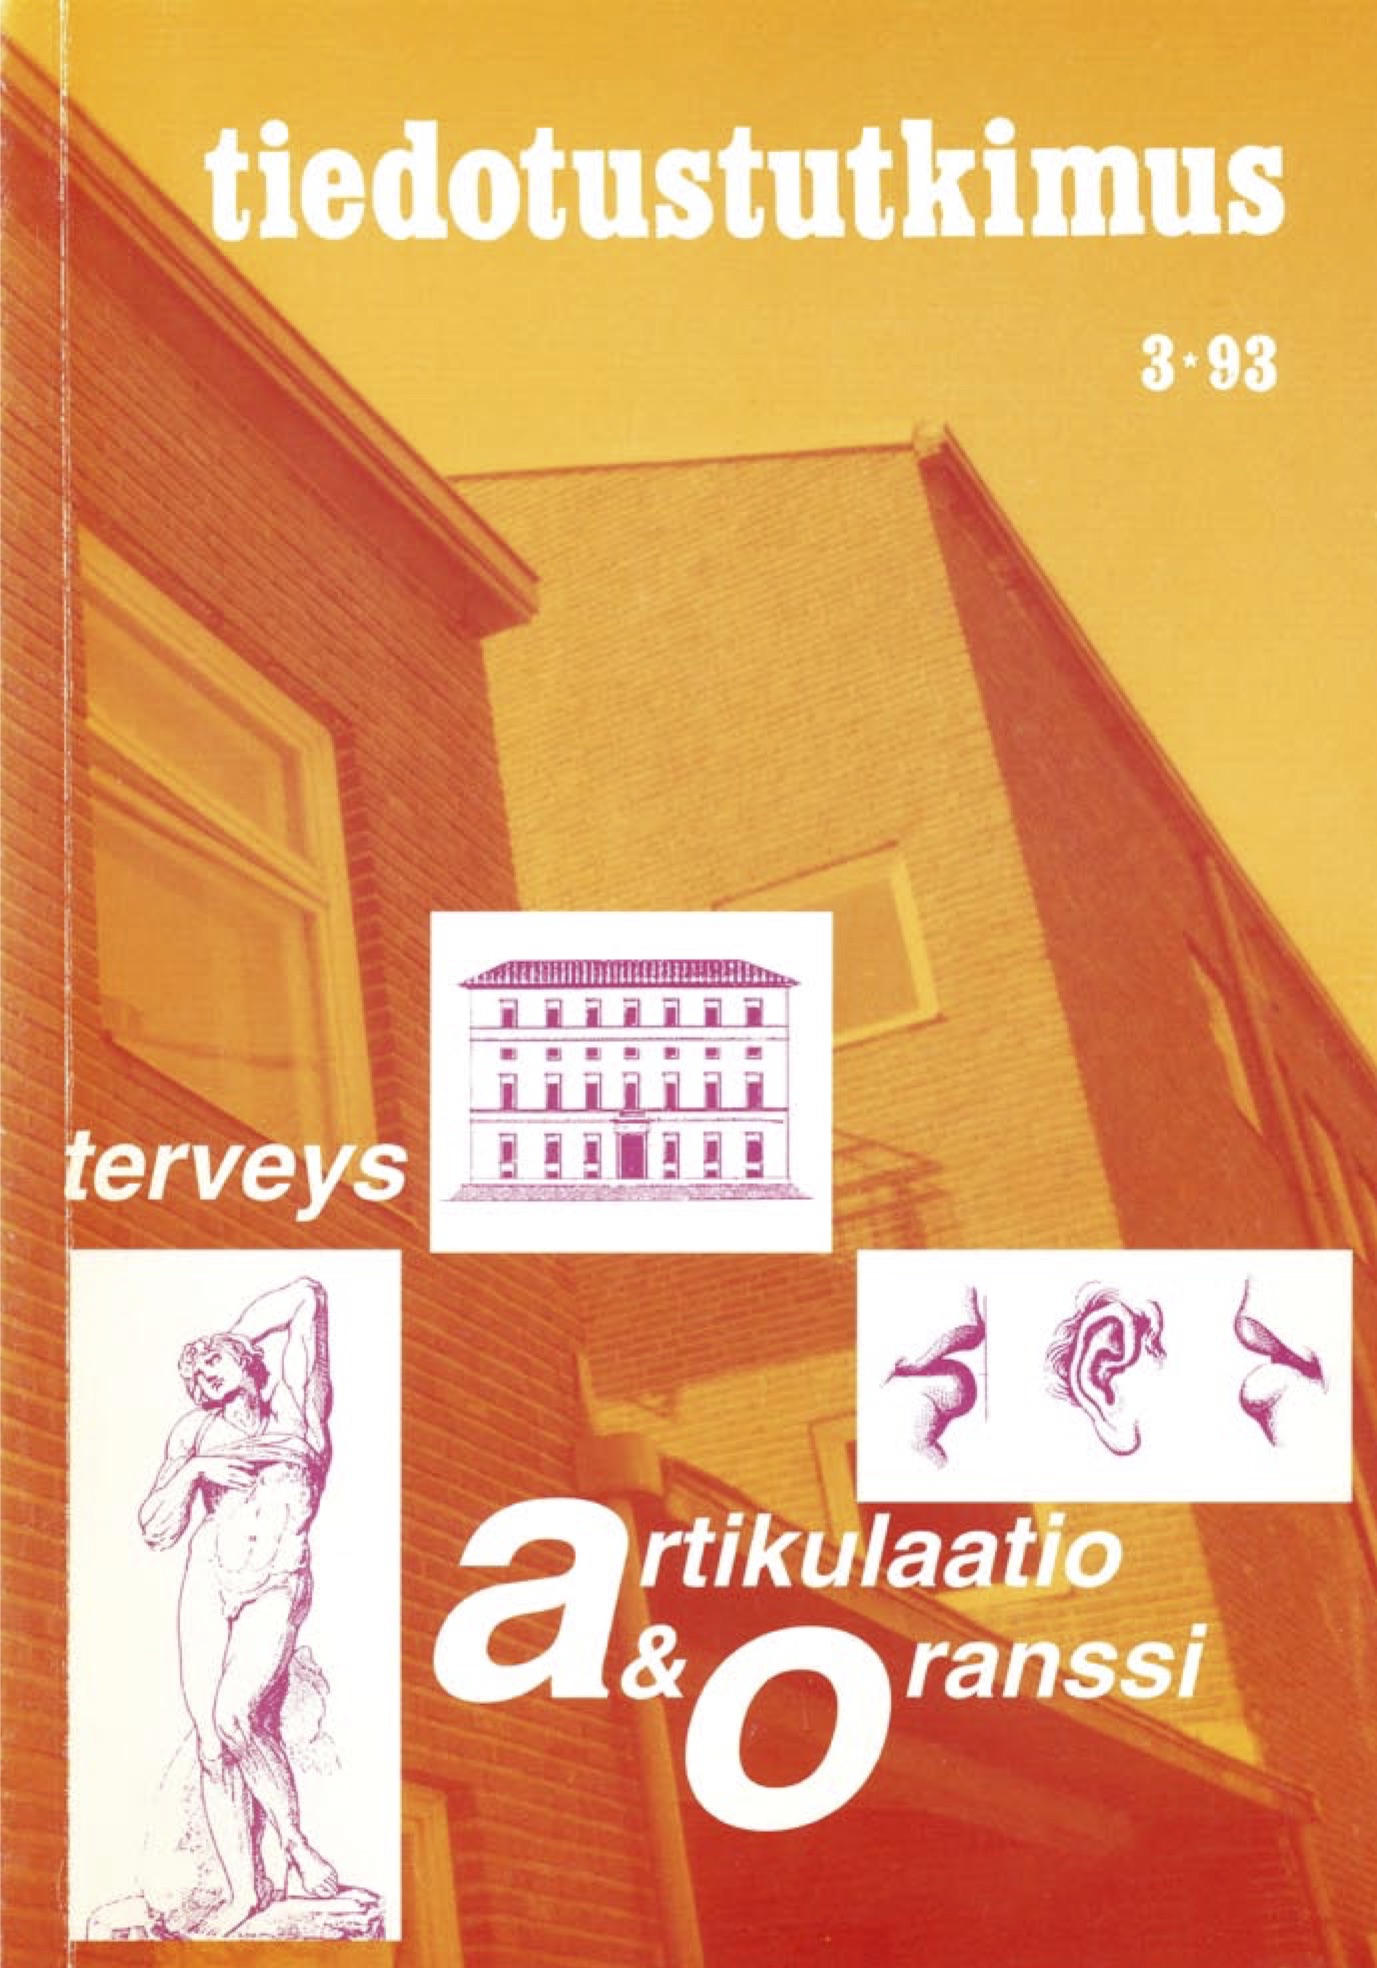 					Näytä Vol 16 Nro 3 (1993)
				